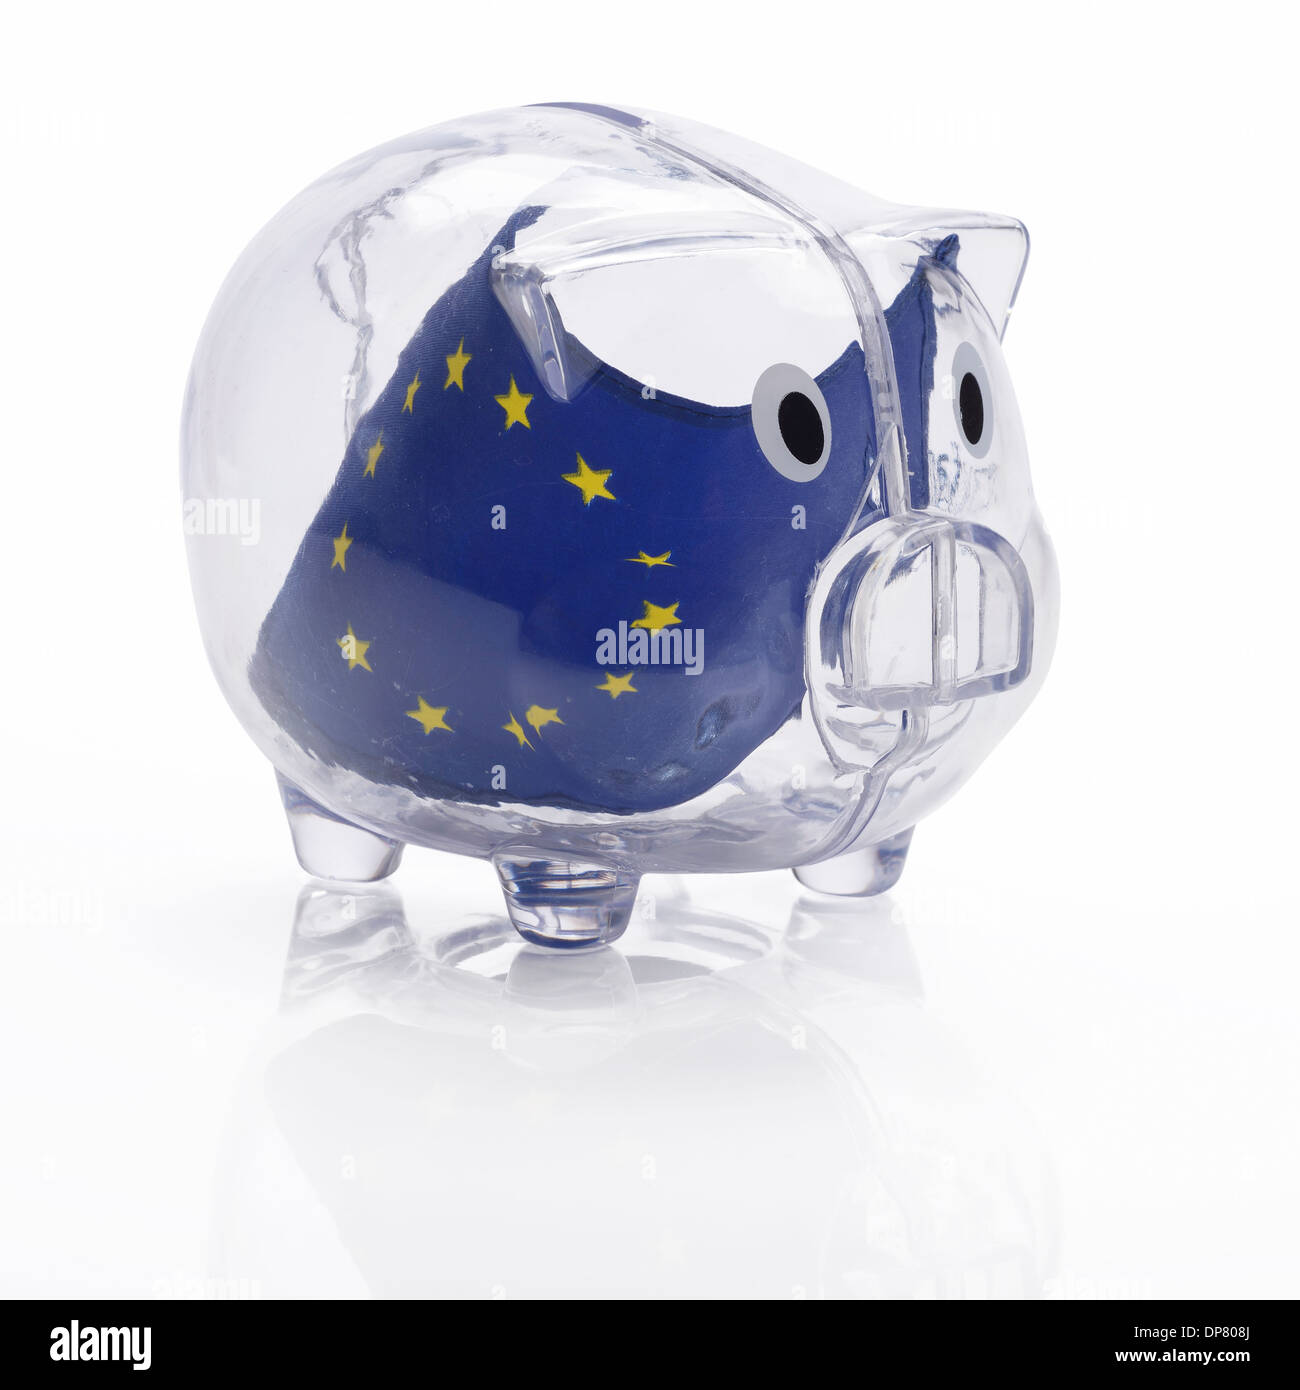 Drapeau de l'UE européenne dans une tirelire en plastique transparent Banque D'Images